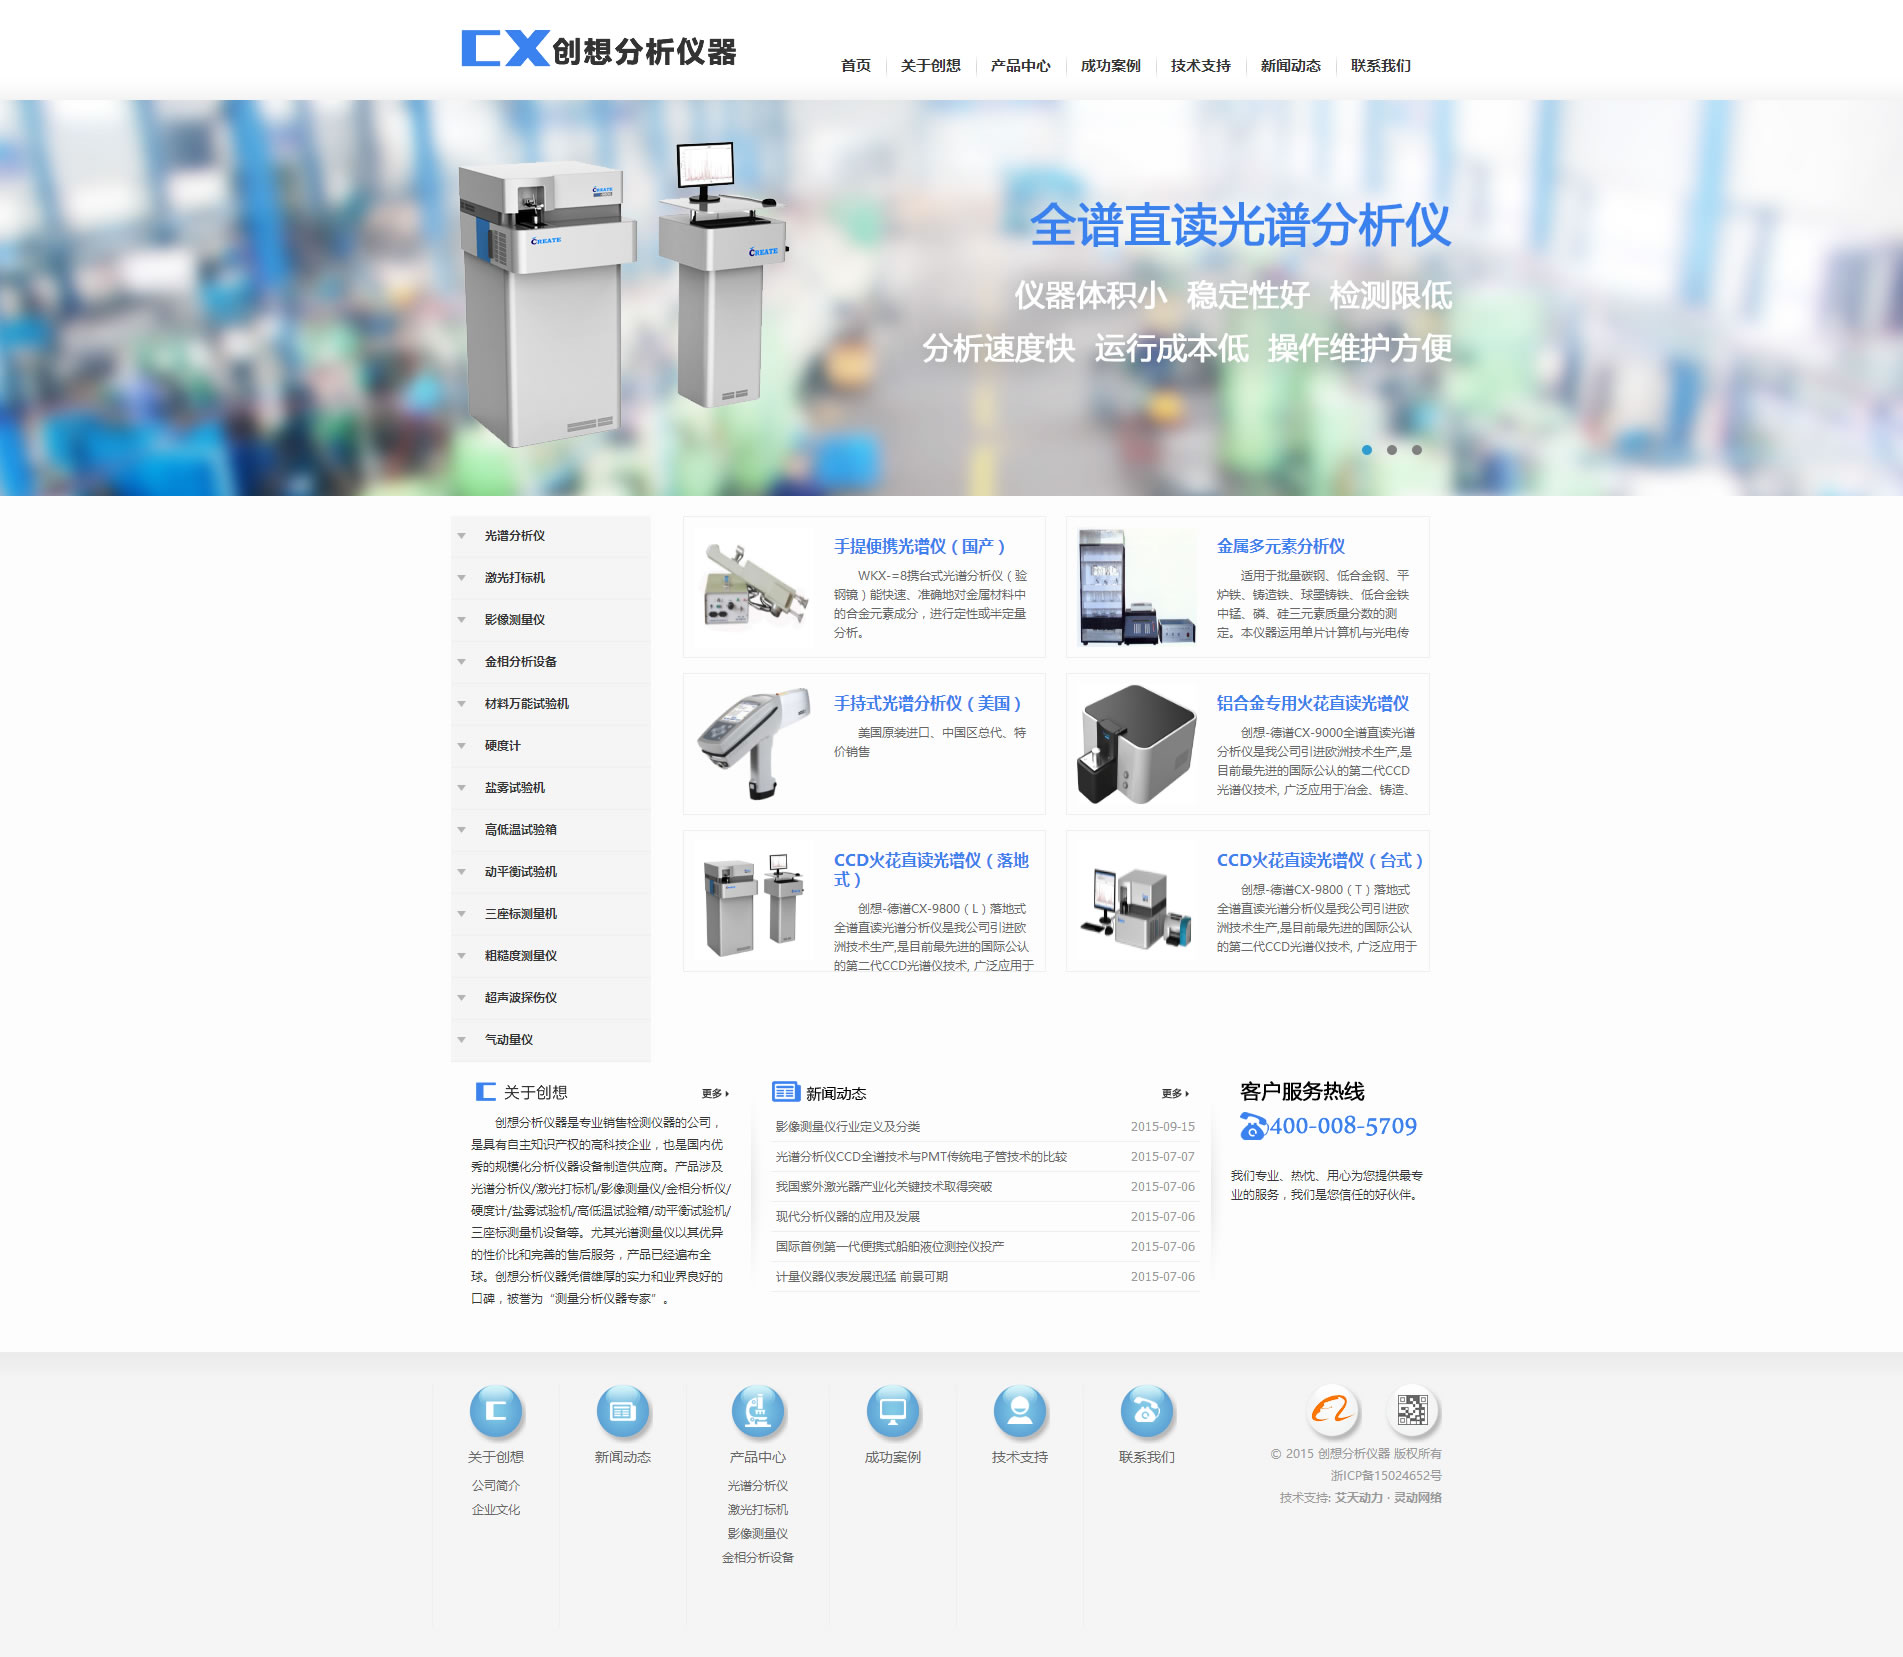 宁波创想分析仪器科技有限公司，网站建设技术支持：艾天动力